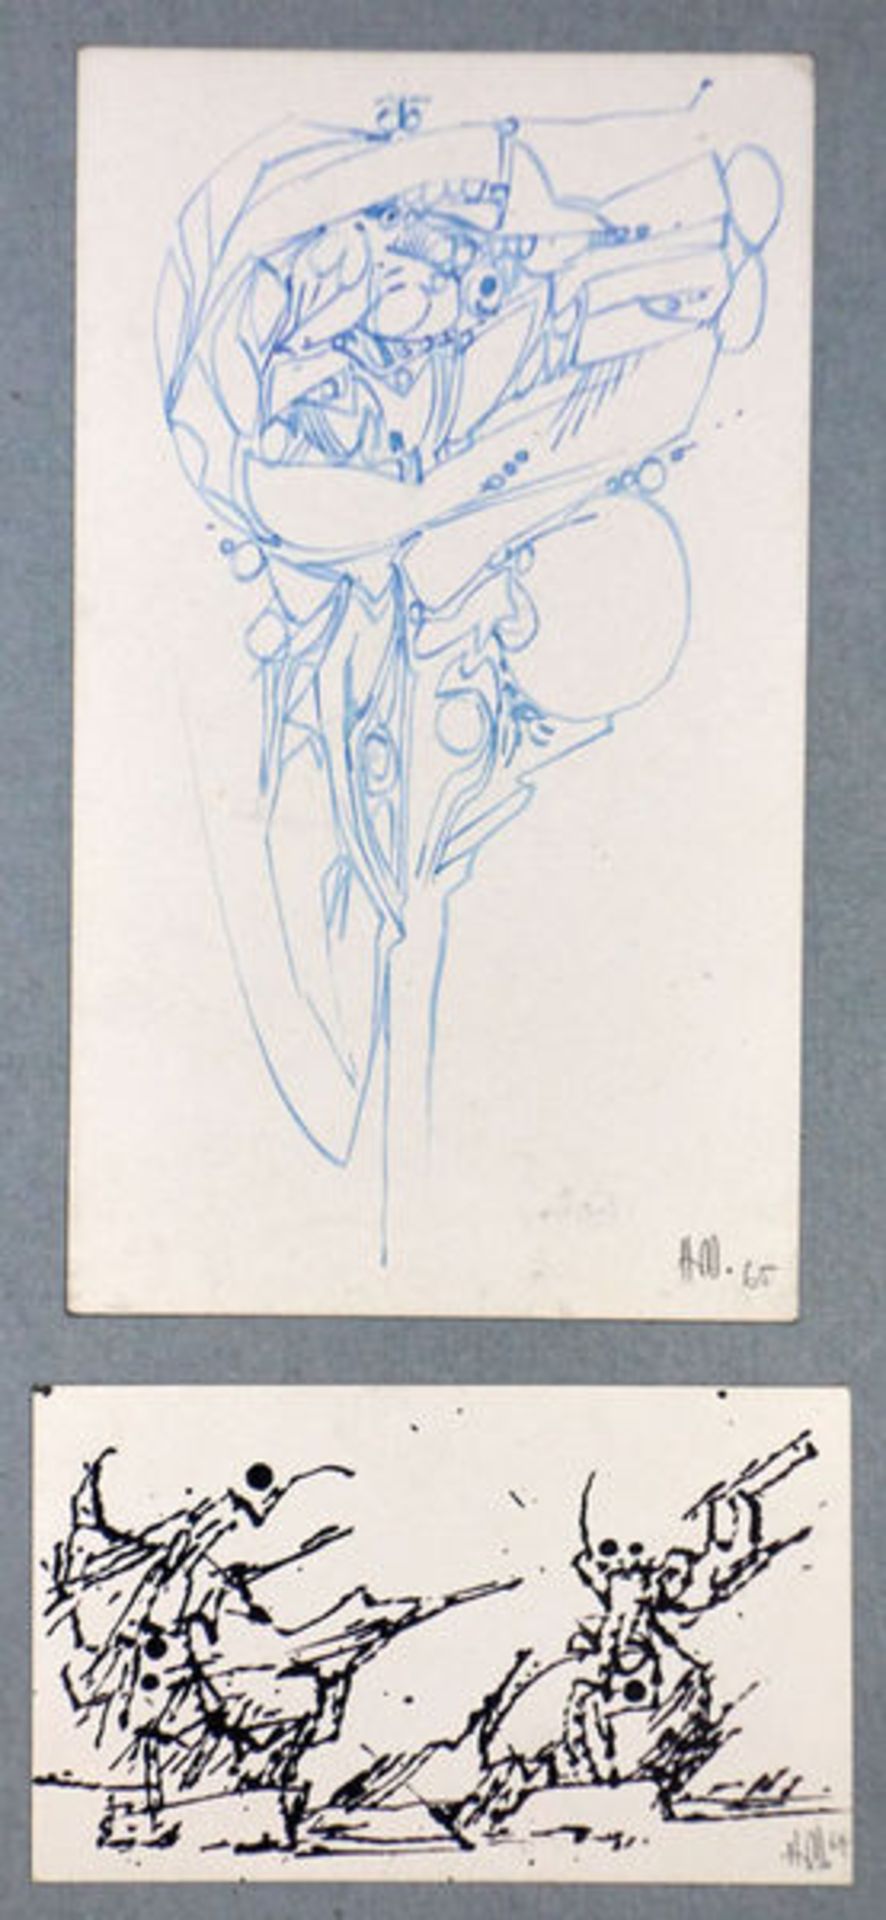 Dahlem, Hans Konvolut Sammlung von 3 Blatt unikaten Zeichnungen auf unterschiedlichen Papieren ( - Bild 2 aus 2